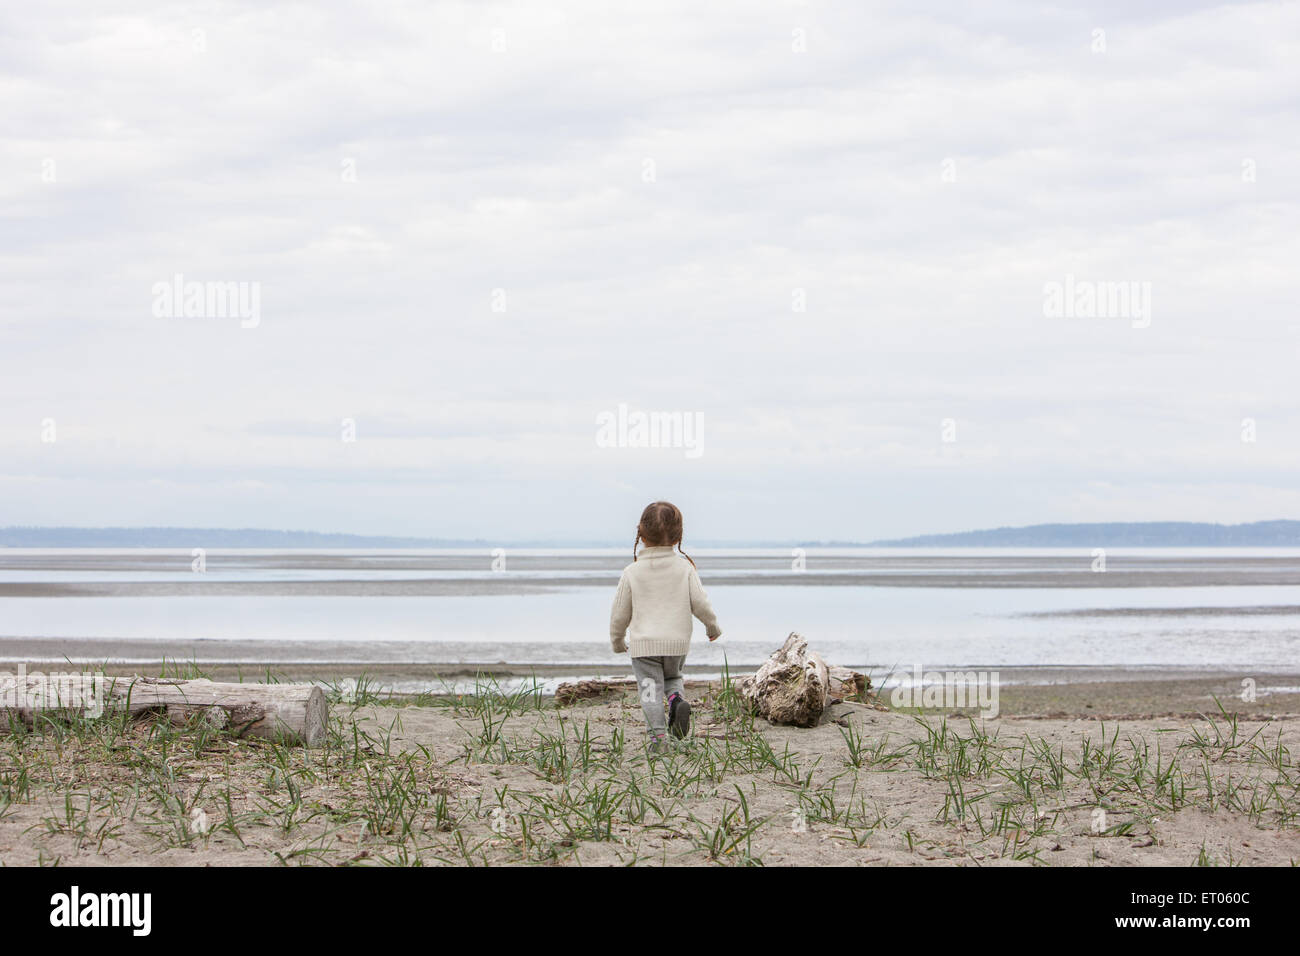 Girl running toward ocean on beach Stock Photo